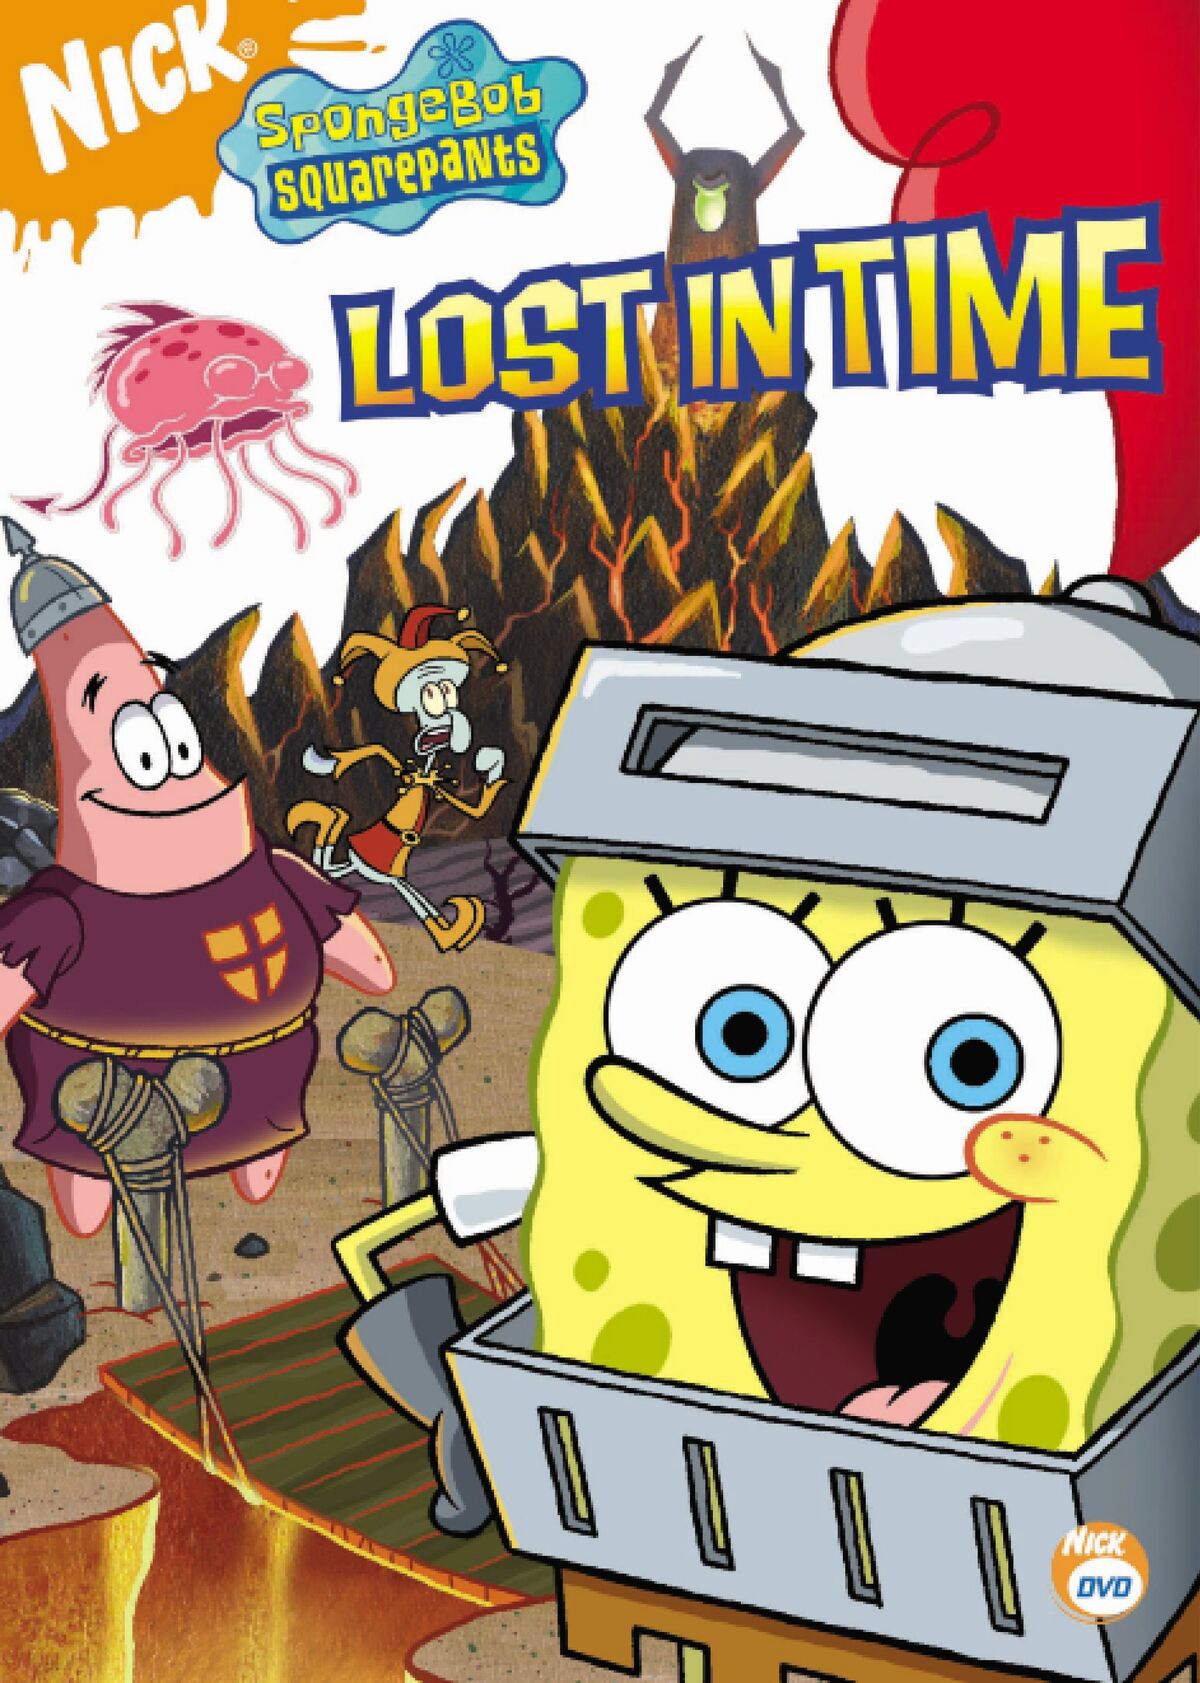 Lost in Time (DVD), Encyclopedia SpongeBobia